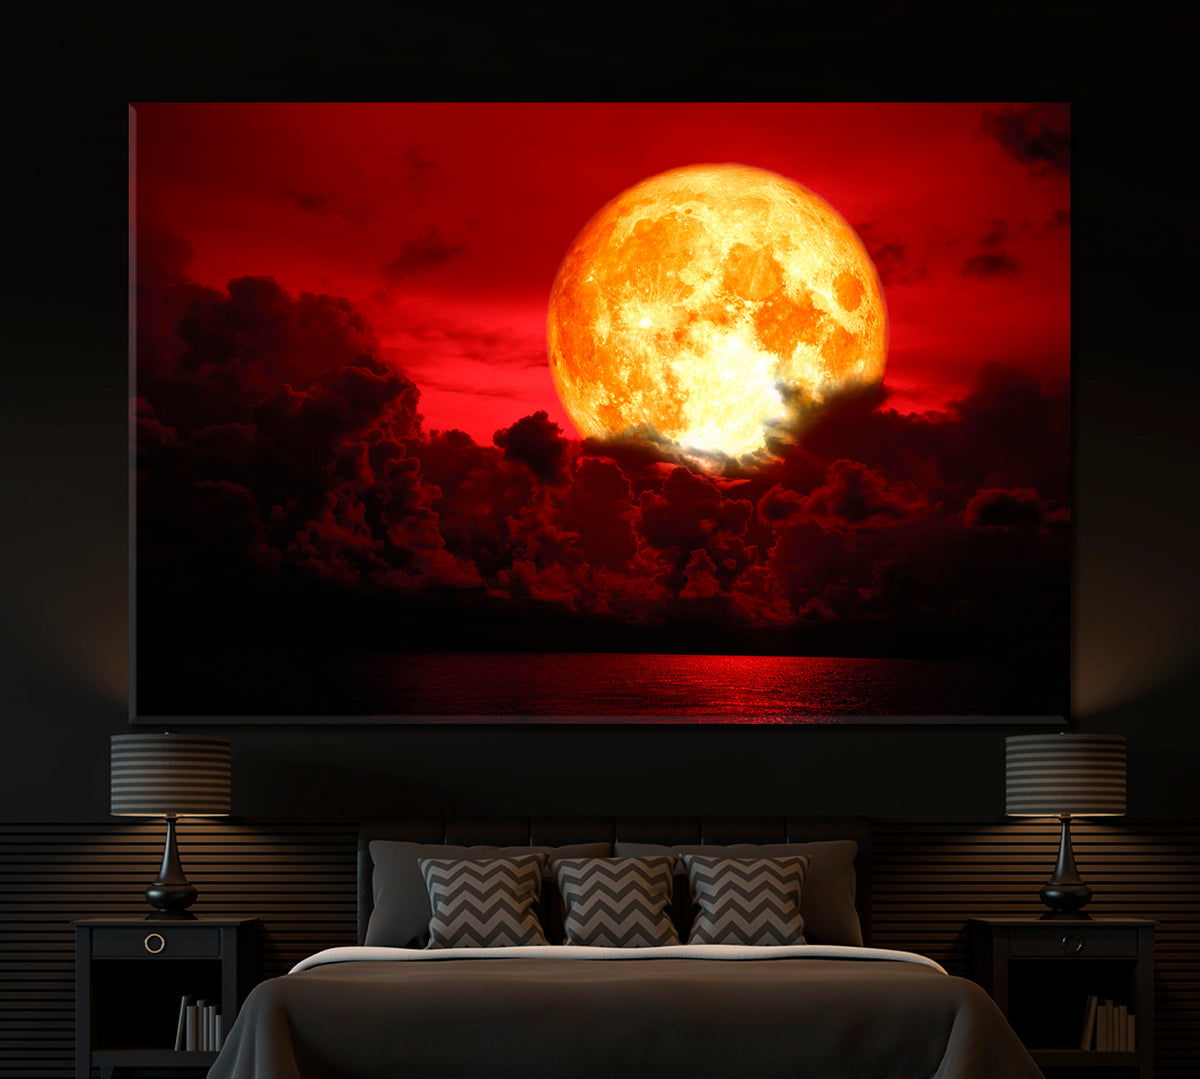 Eclipse Full Blood Moon Fabulous Landscape Scenery Landscape Fine Art Print Artesty 1 panel 24" x 16" 